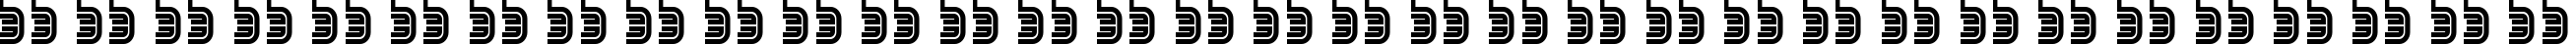 Пример написания русского алфавита шрифтом SEGA LOGO FONT